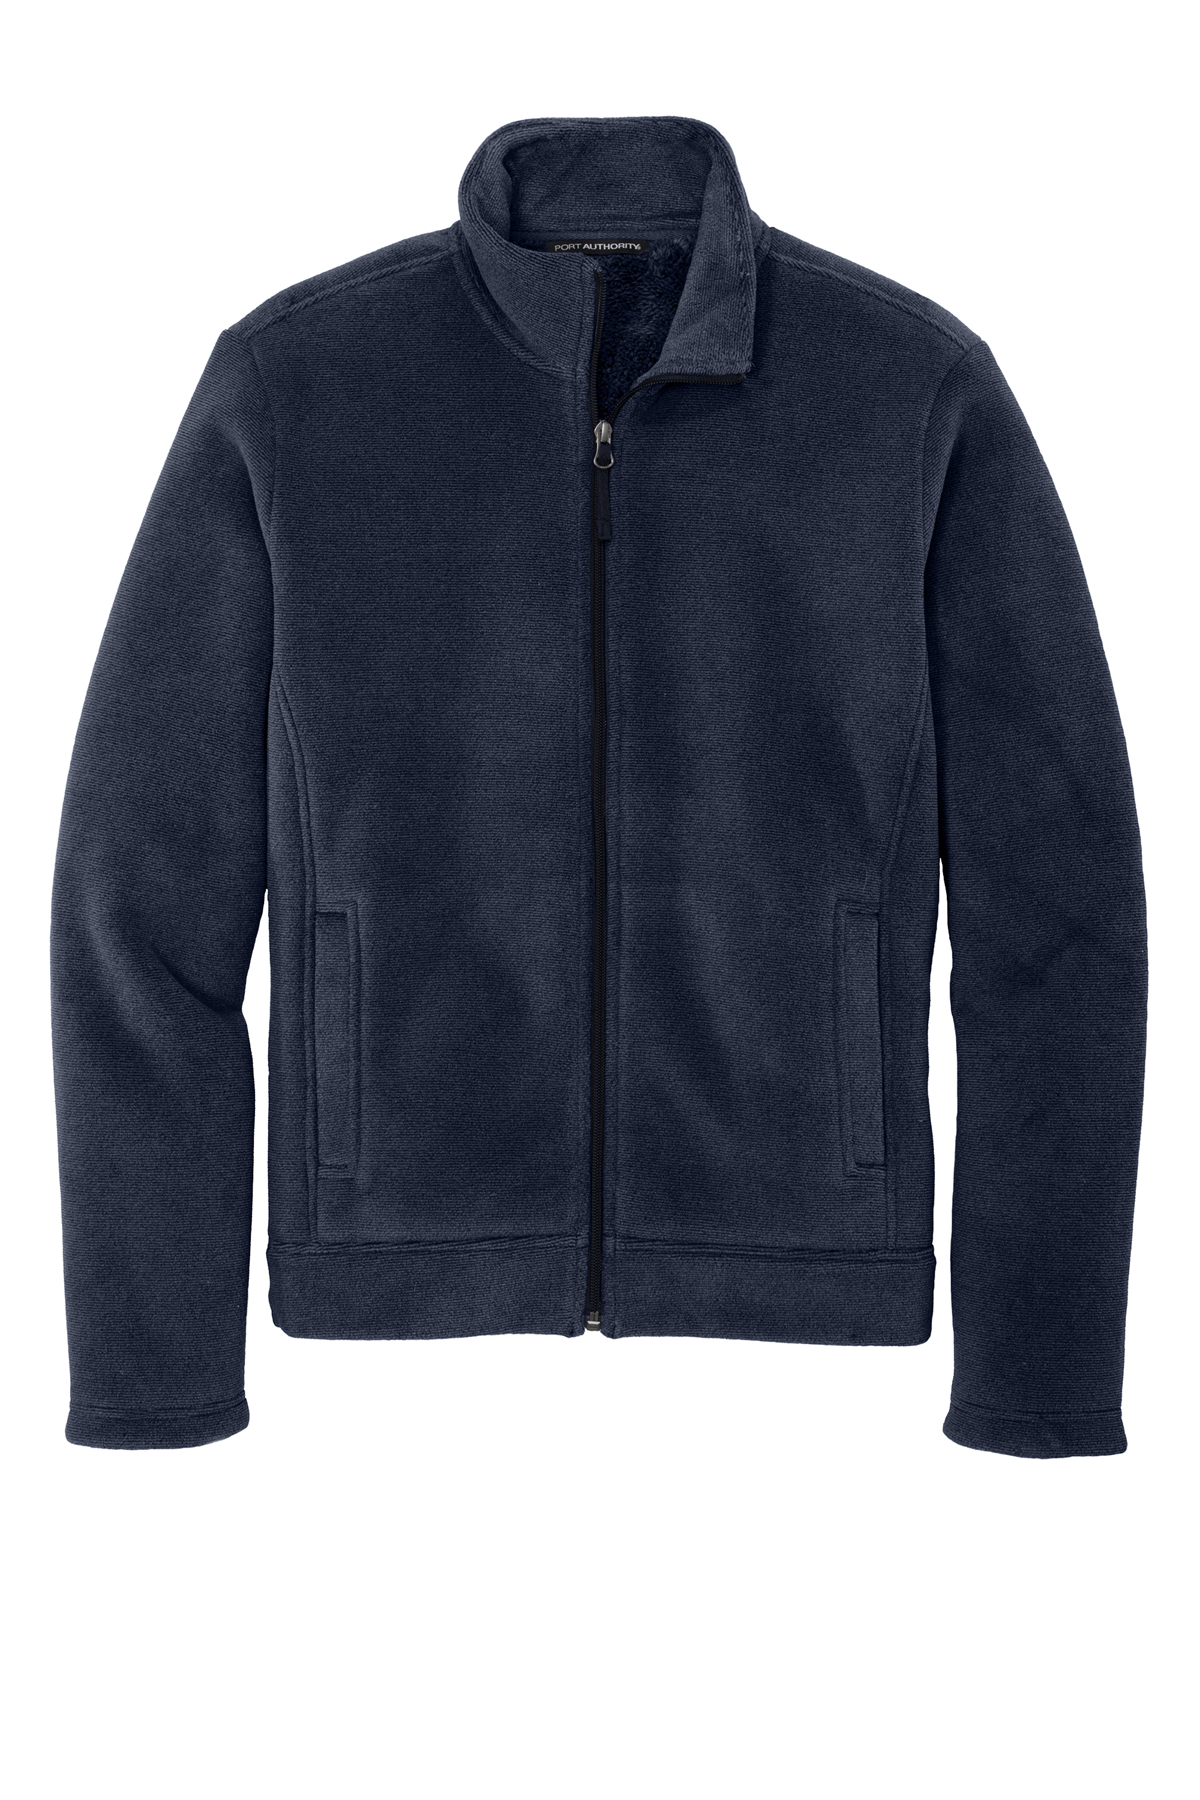 Port Authority Ultra Warm Brushed | Port Product Jacket | Authority Fleece